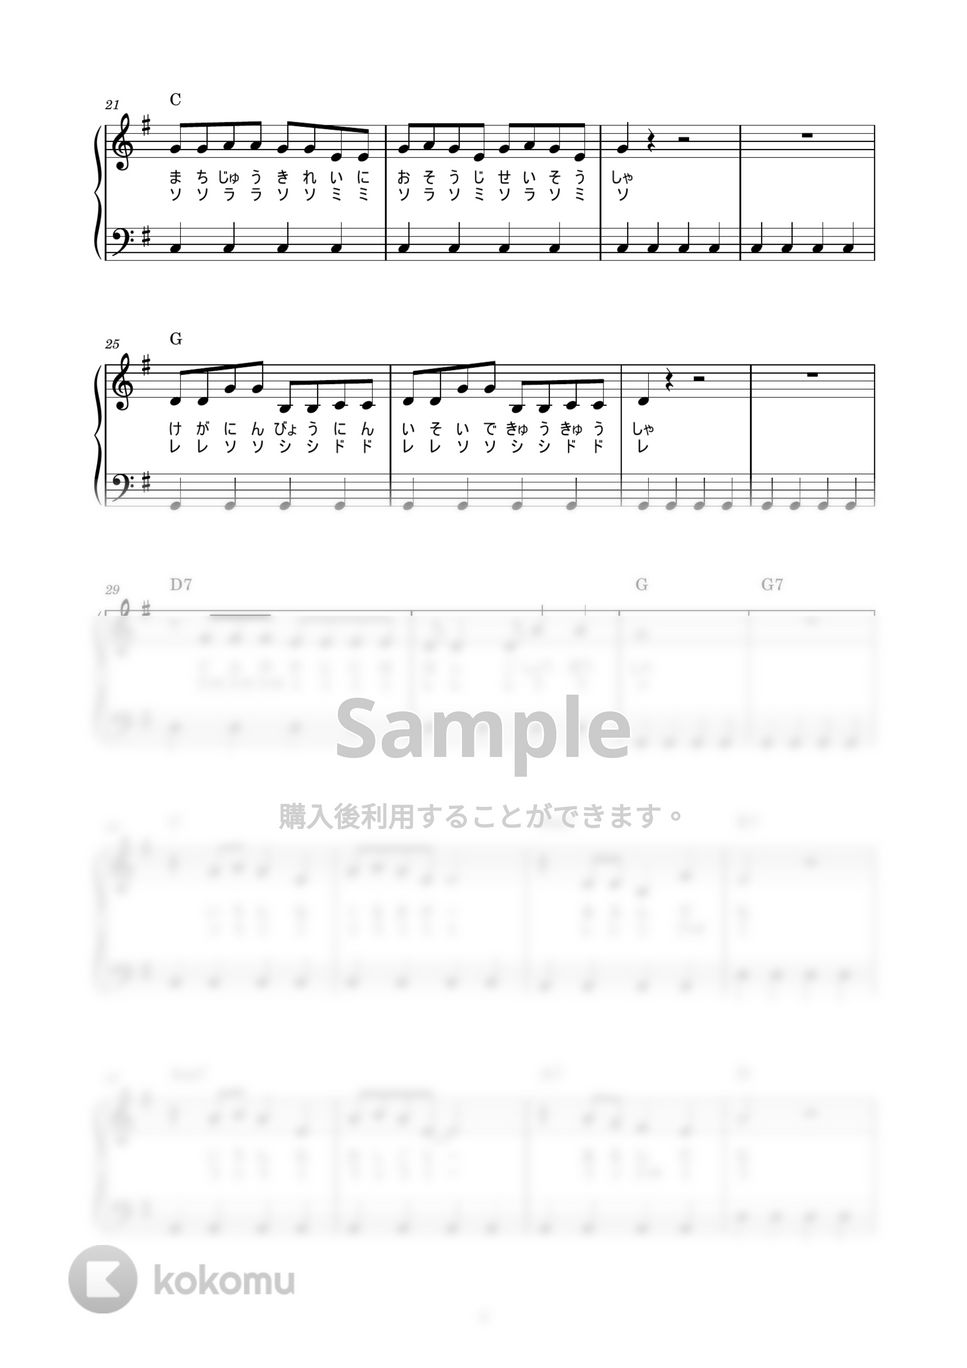 のこいのこ - はたらくくるま (かんたん / 歌詞付き / ドレミ付き / 初心者) by piano.tokyo